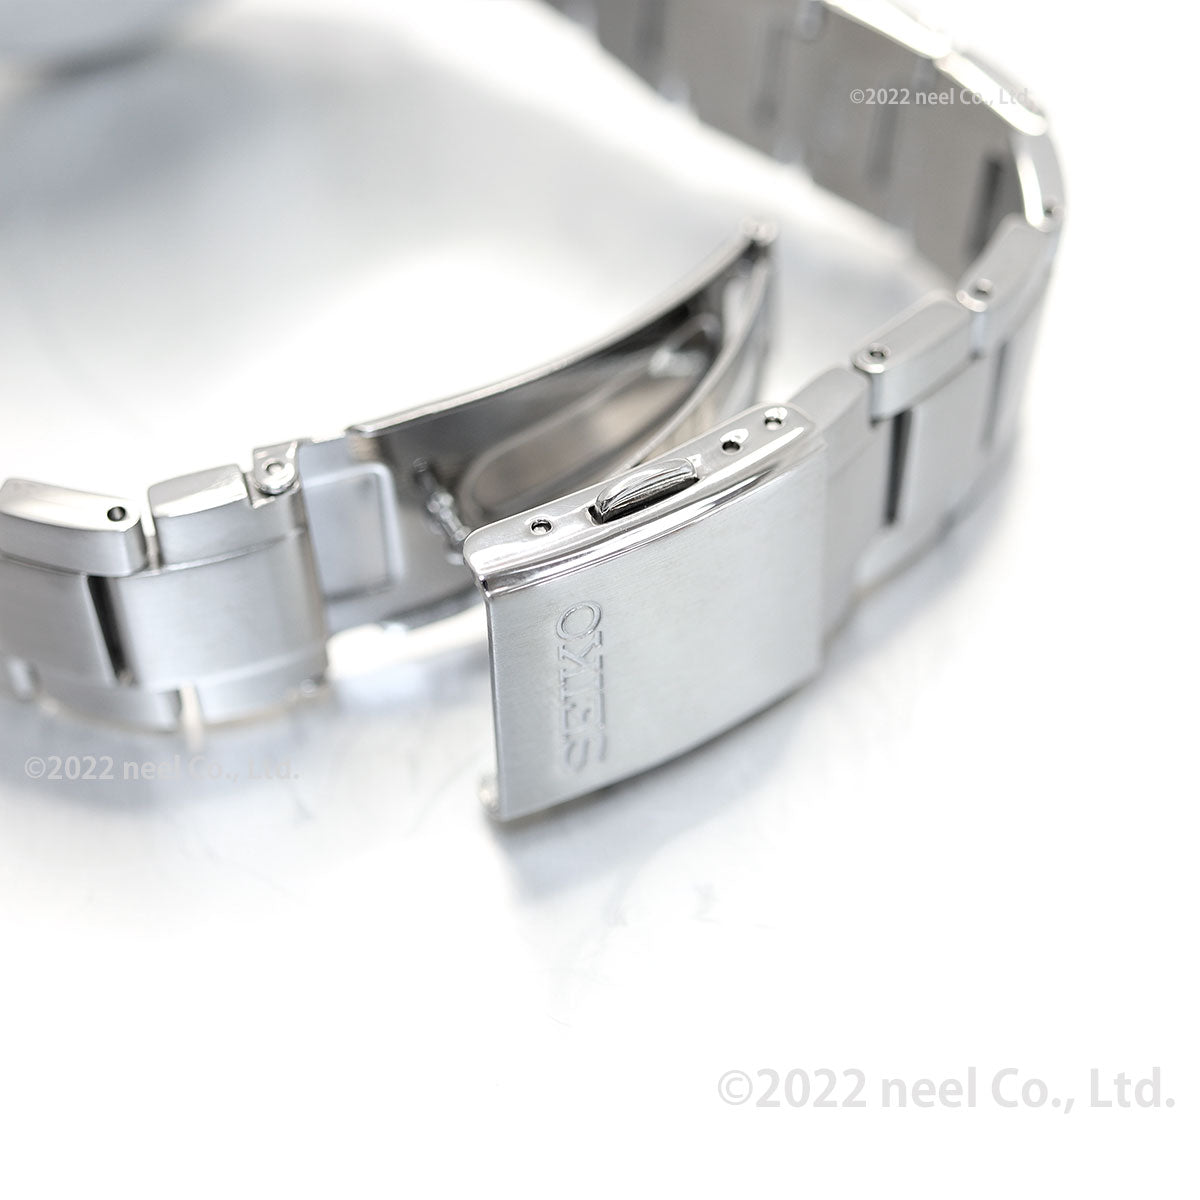 セイコー セレクション SEIKO SELECTION ソーラー 腕時計 メンズ レディース ペアモデル SBPX145 STPX095